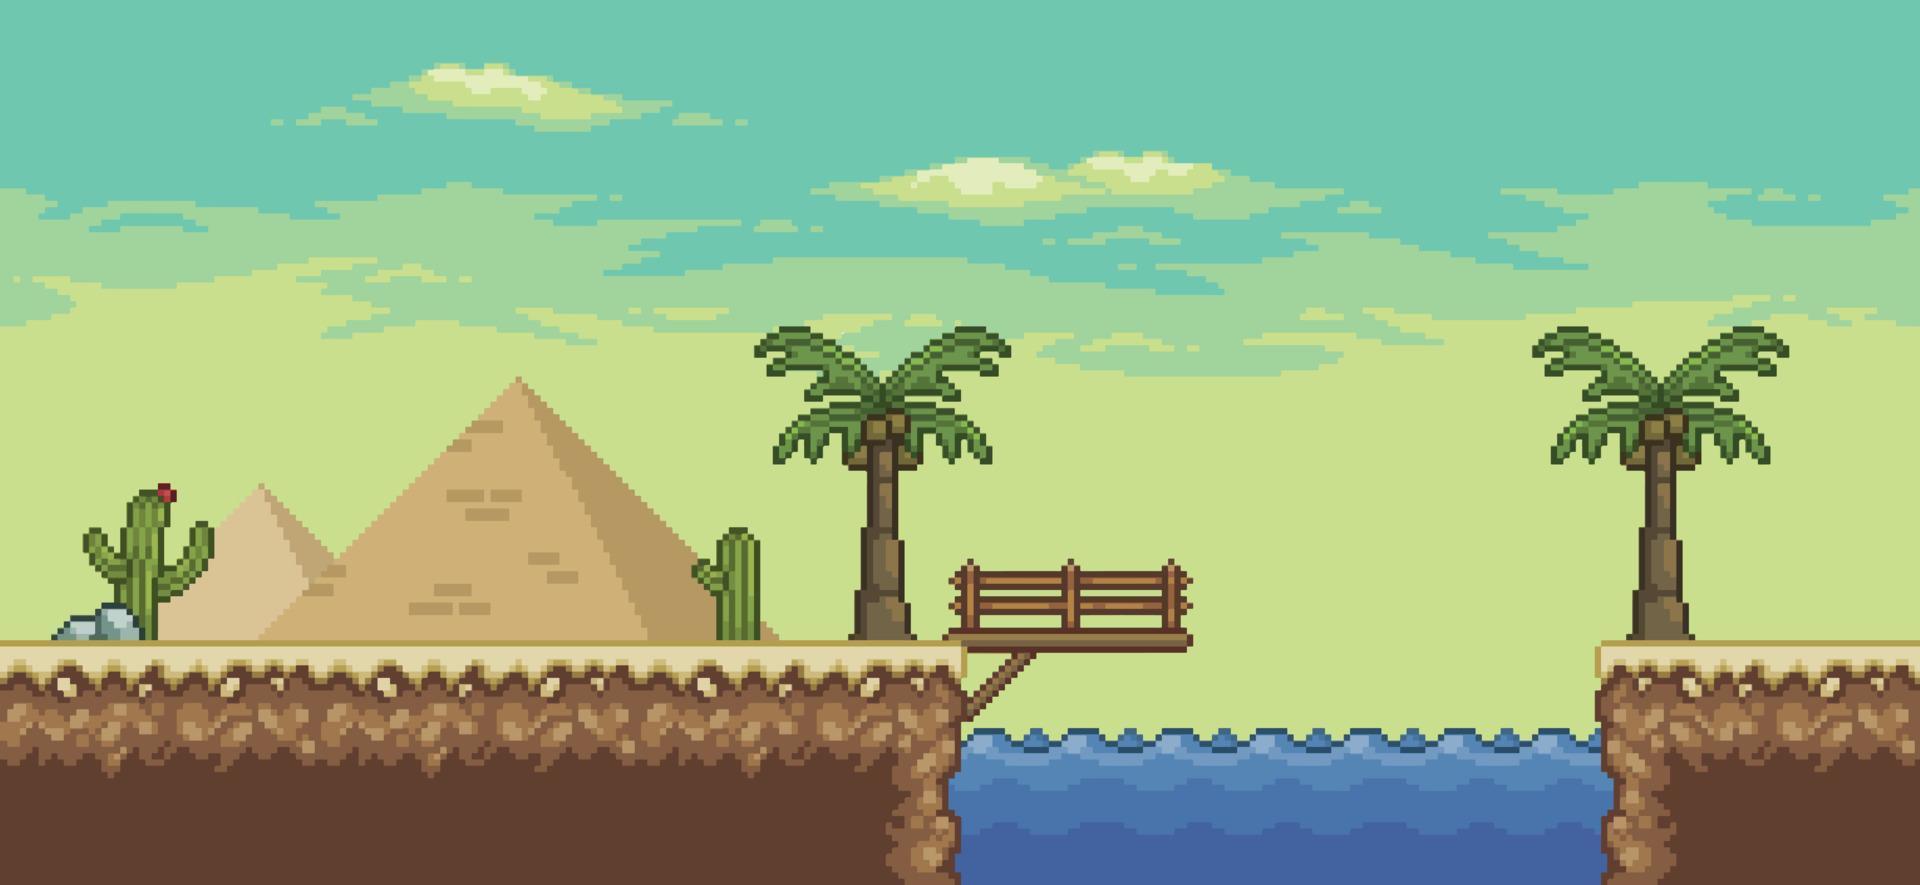 scène de jeu pixel art désert avec, pyramide, oasis, pont, palmier, cactus, fond de carte de direction 8bit vecteur